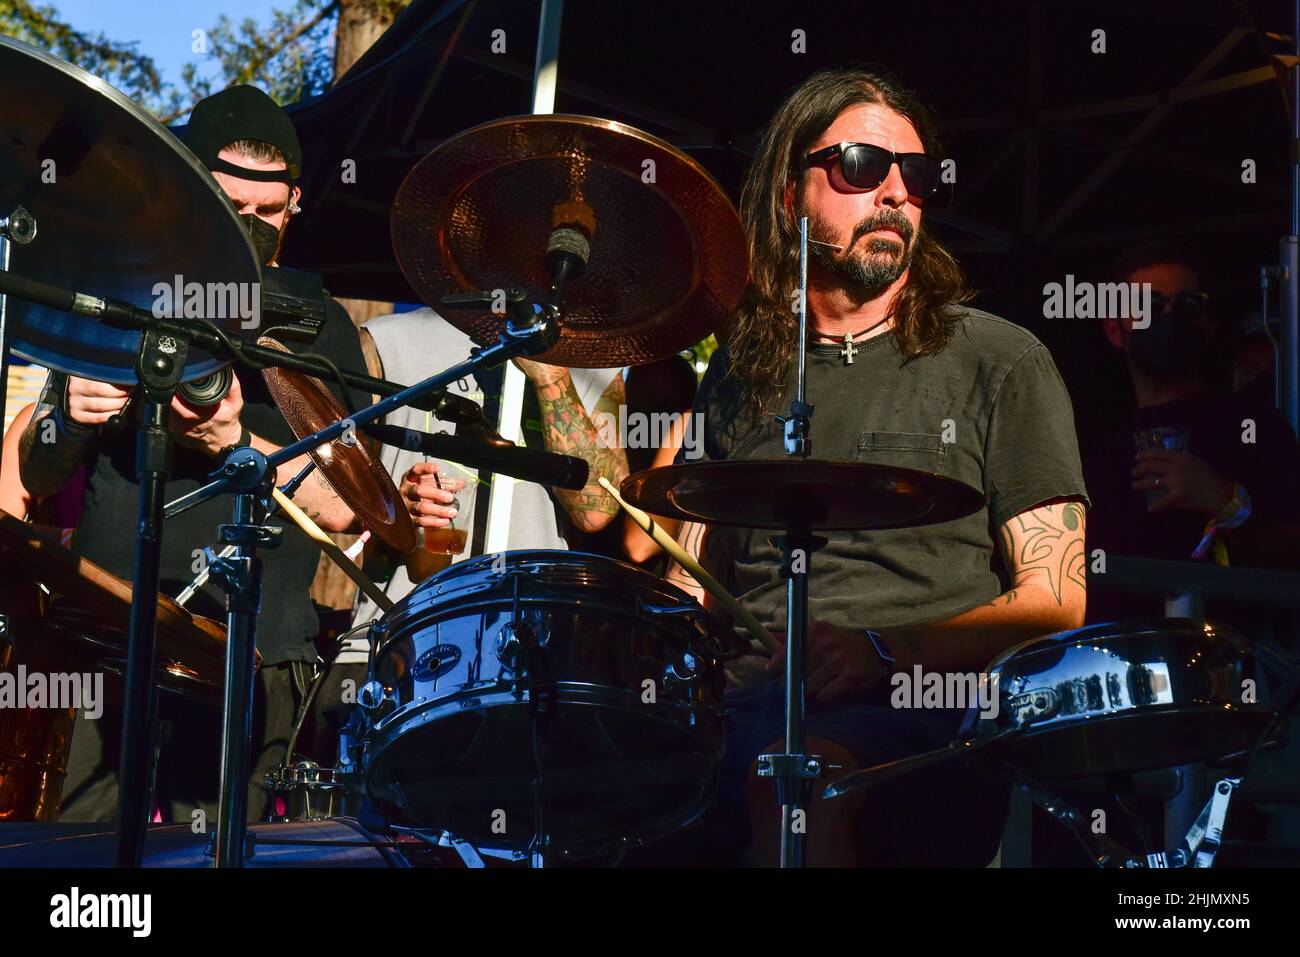 05 septembre 2021 - Festival de BottleRock, Napa, Californie - Dave Grohl jouant un kit de batterie de casseroles et poêles sur la scène culinaire Banque D'Images